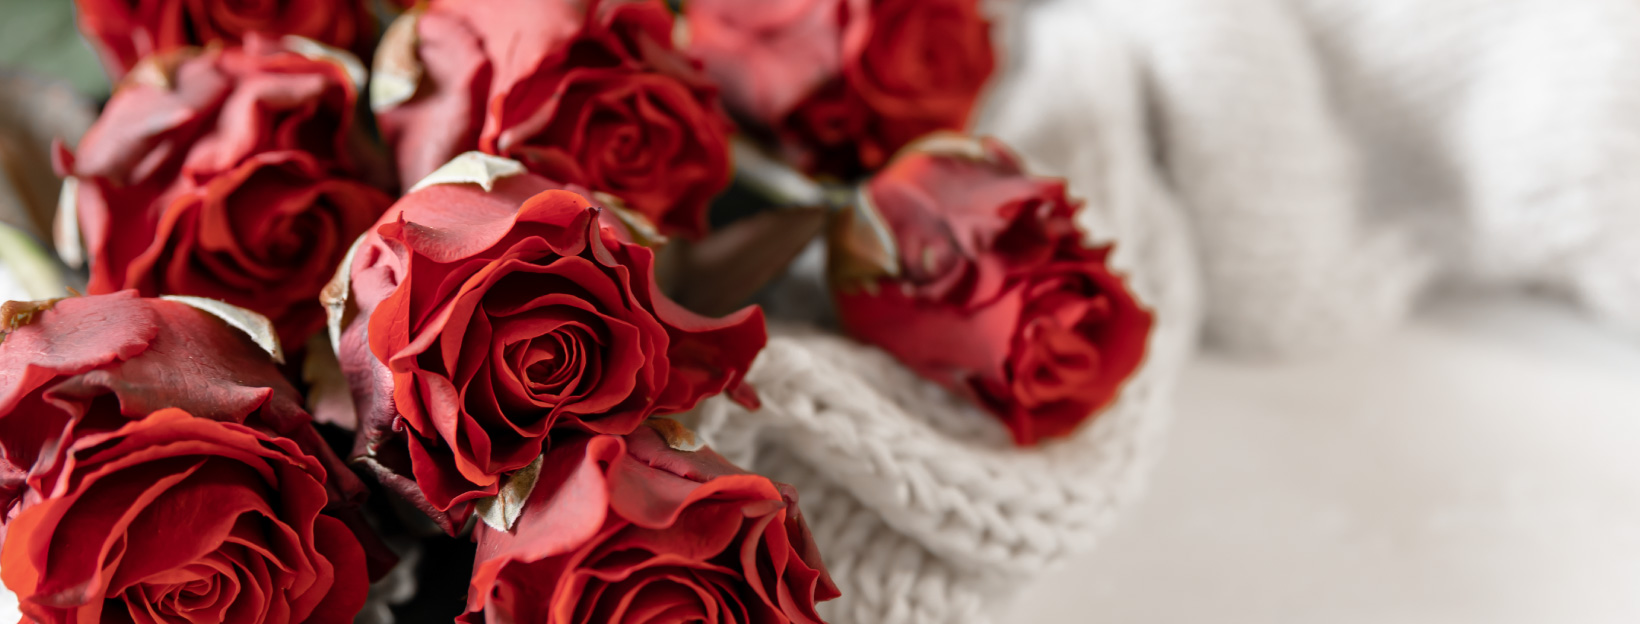 st valentin livraison de roses éternelles rouges